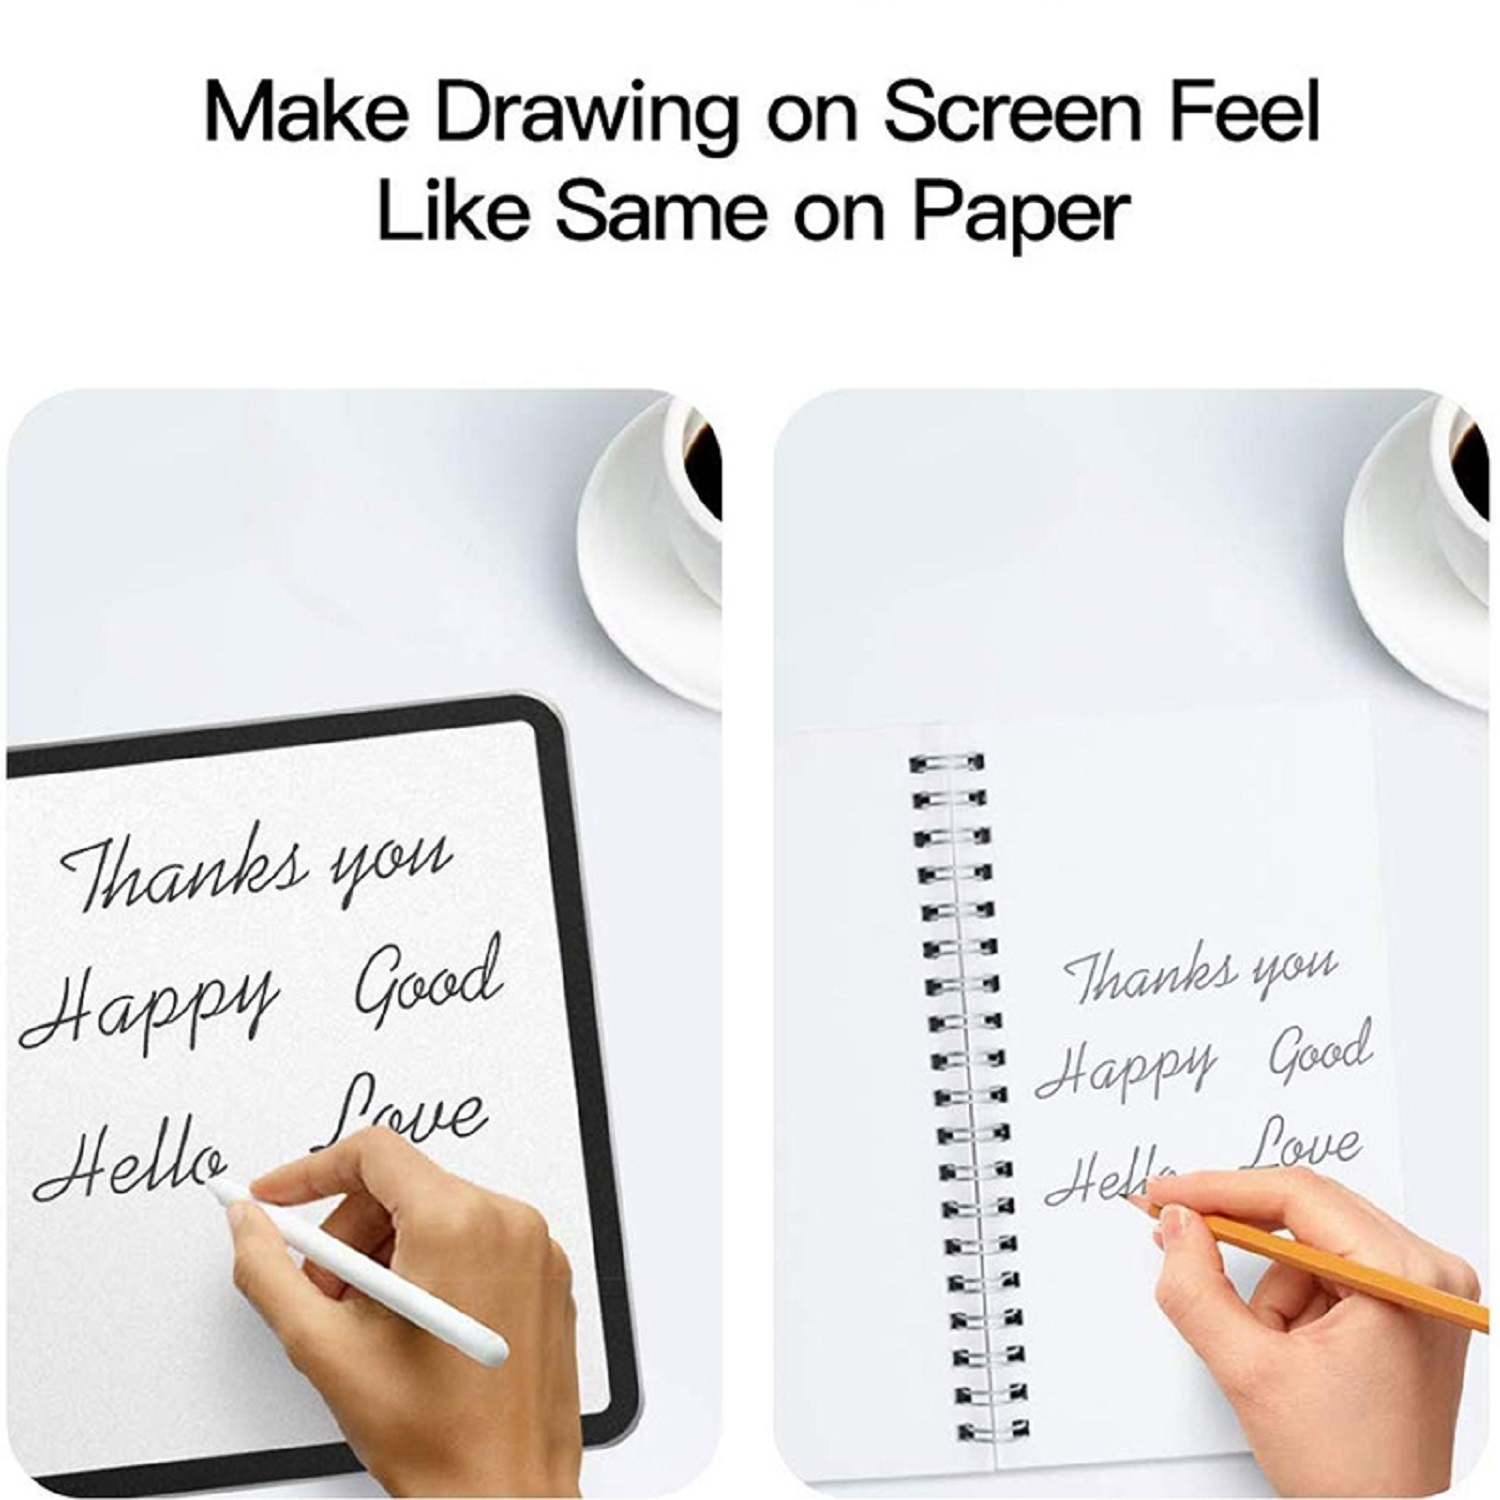 PROTECTORKING 2x iPad 12.9 oder Displayschutzfolie(für malen 2017) Apple skizzieren Schreiben Pro Paperfeel